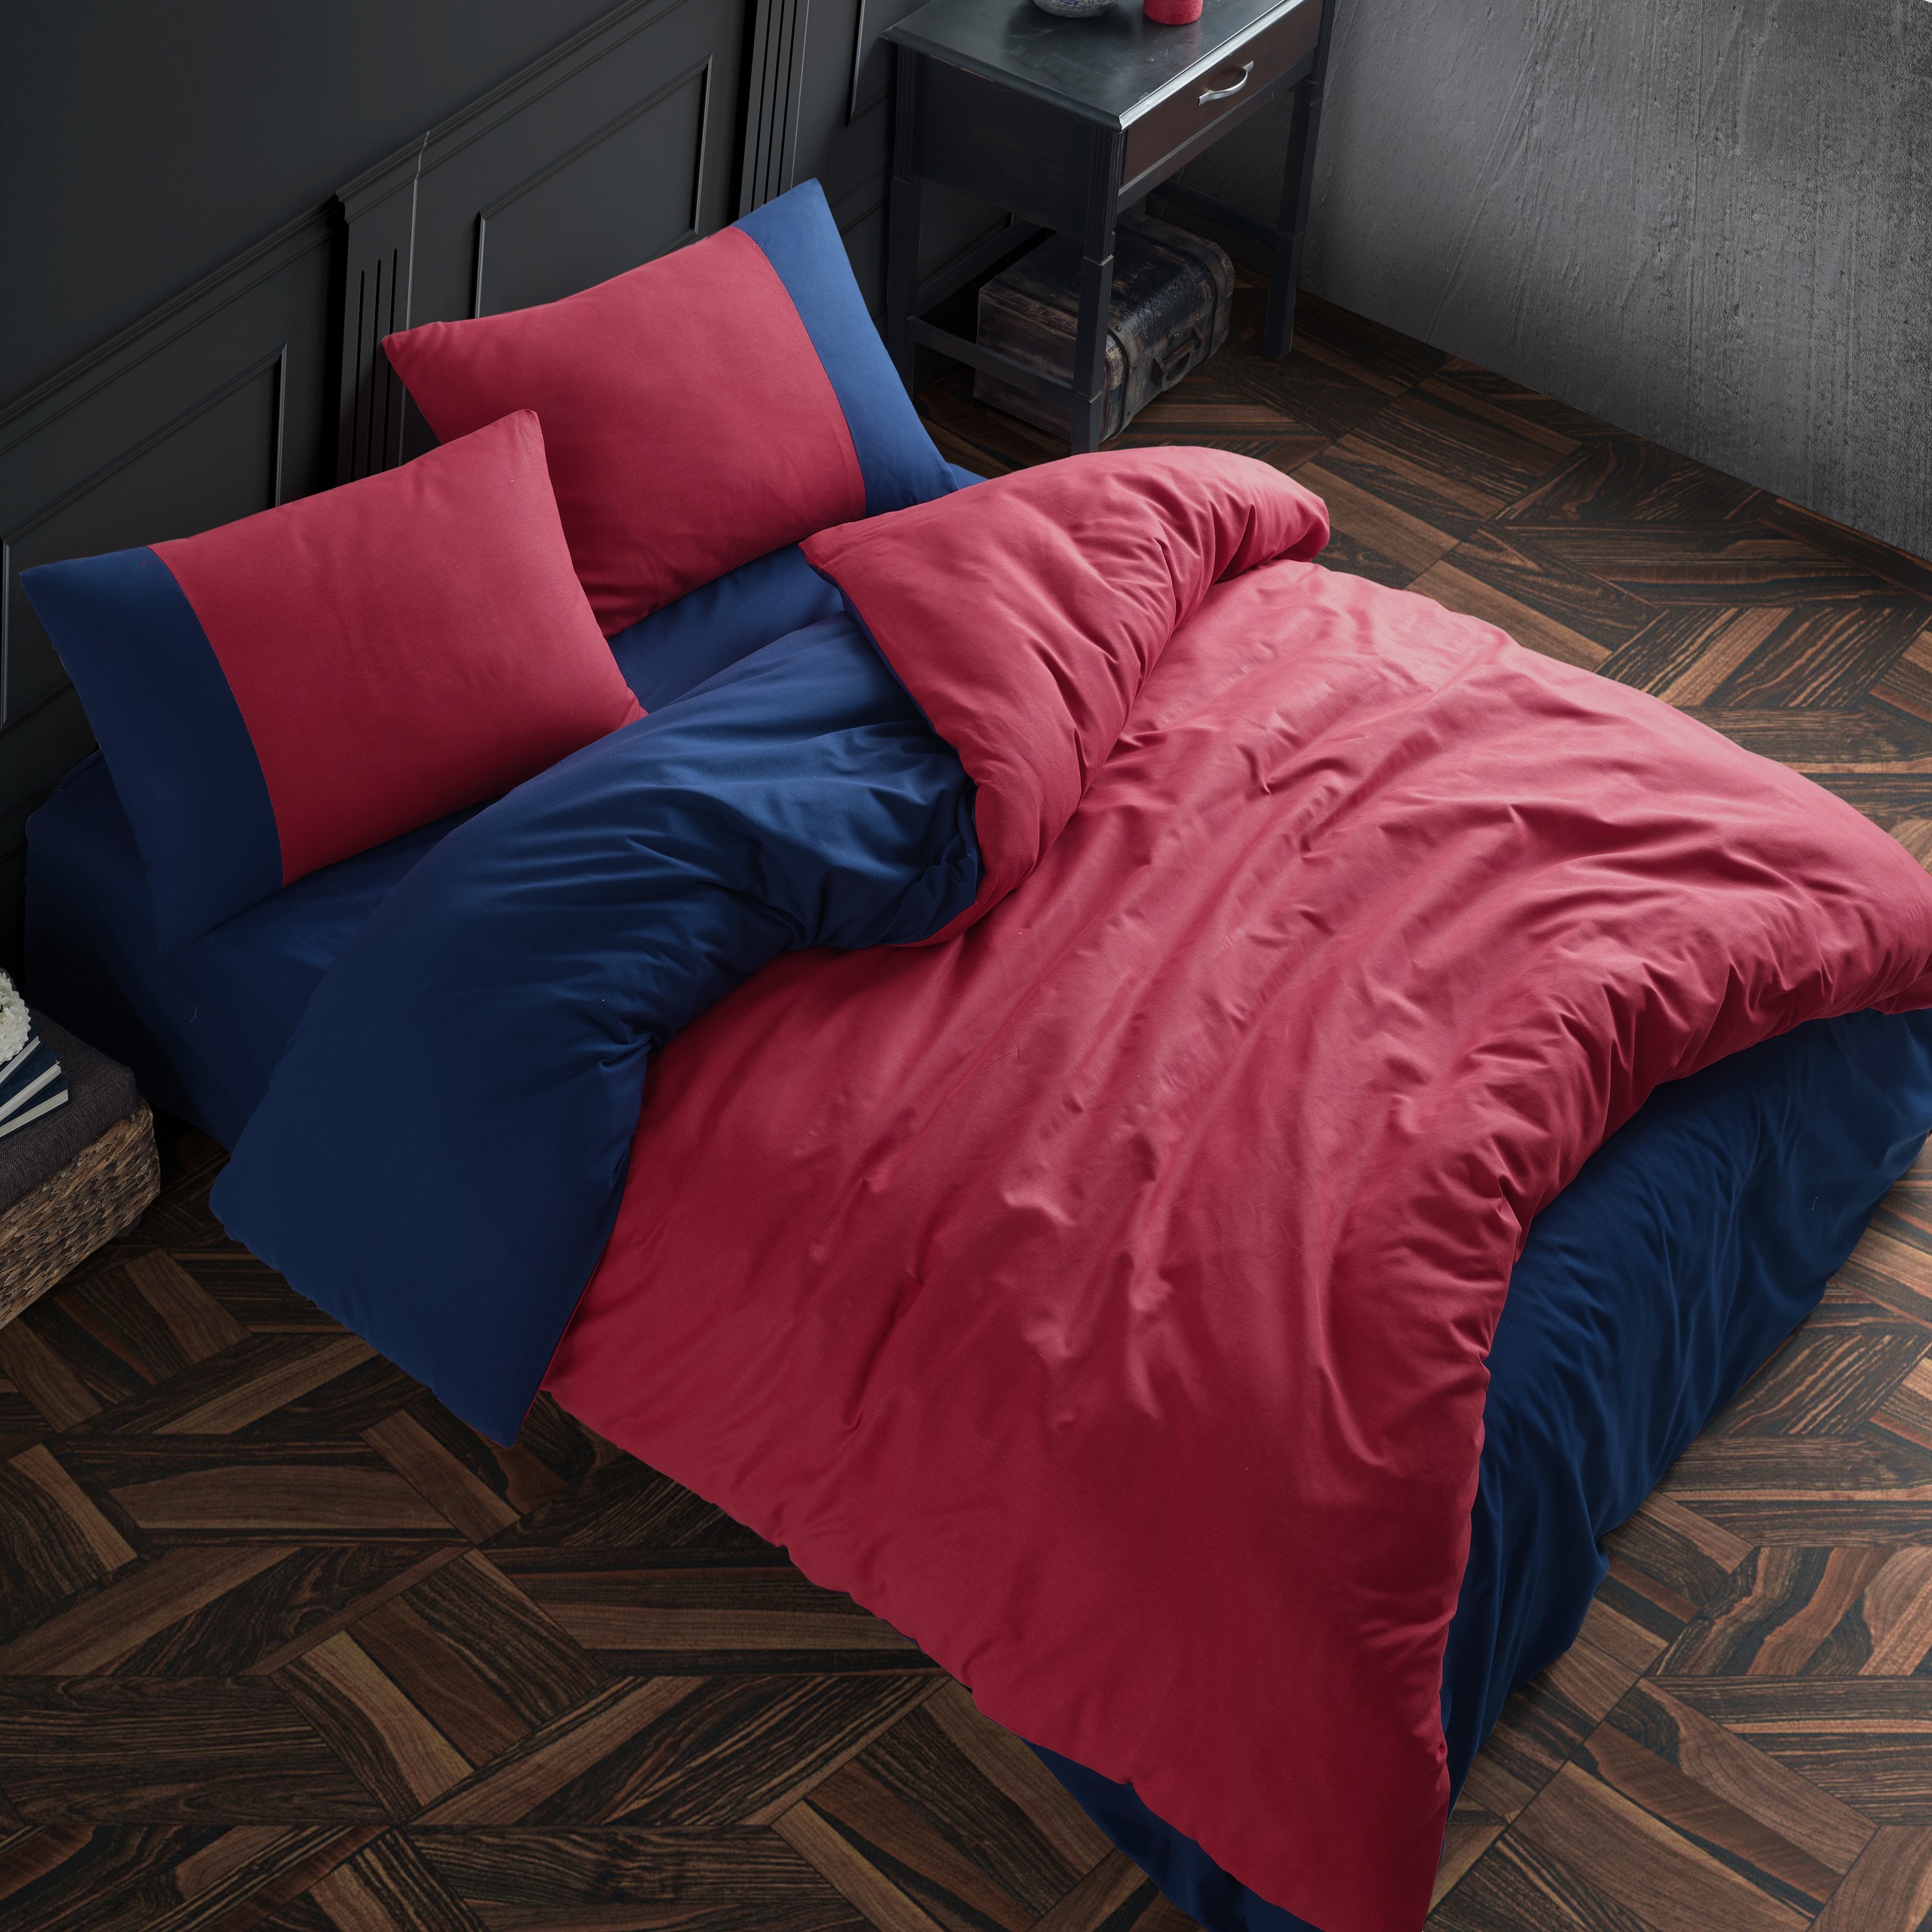 Комплект постельно белья ATLASPLUS евро наволочки 50х70 см ранфорс красный синий